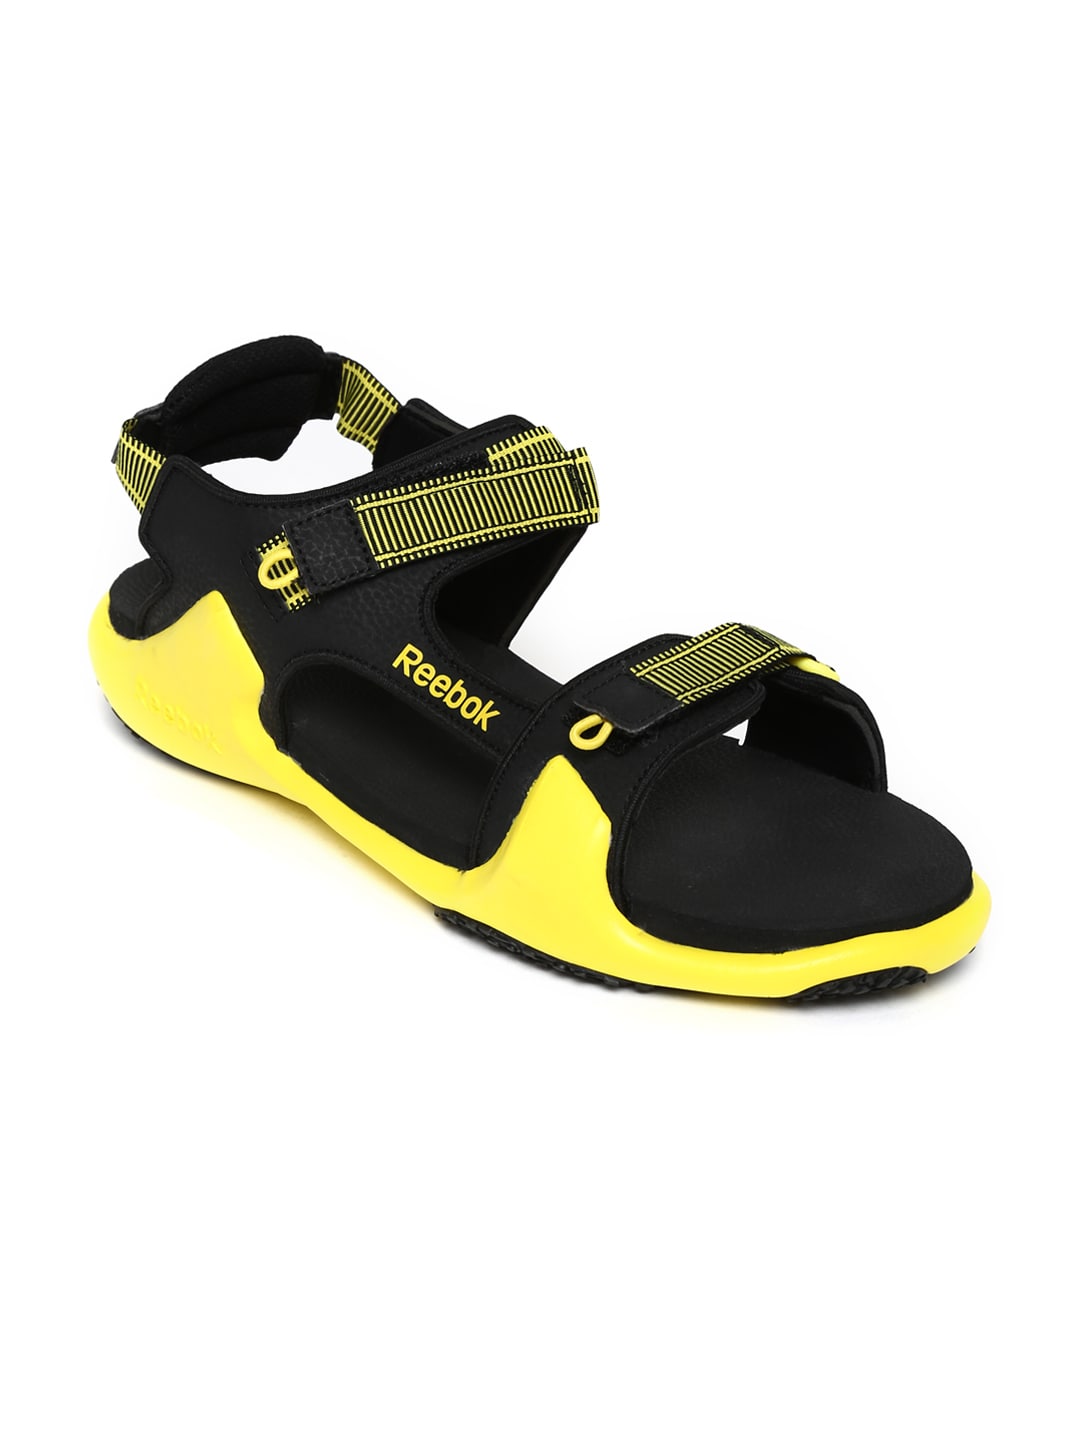 reebok mens sandals online shopping